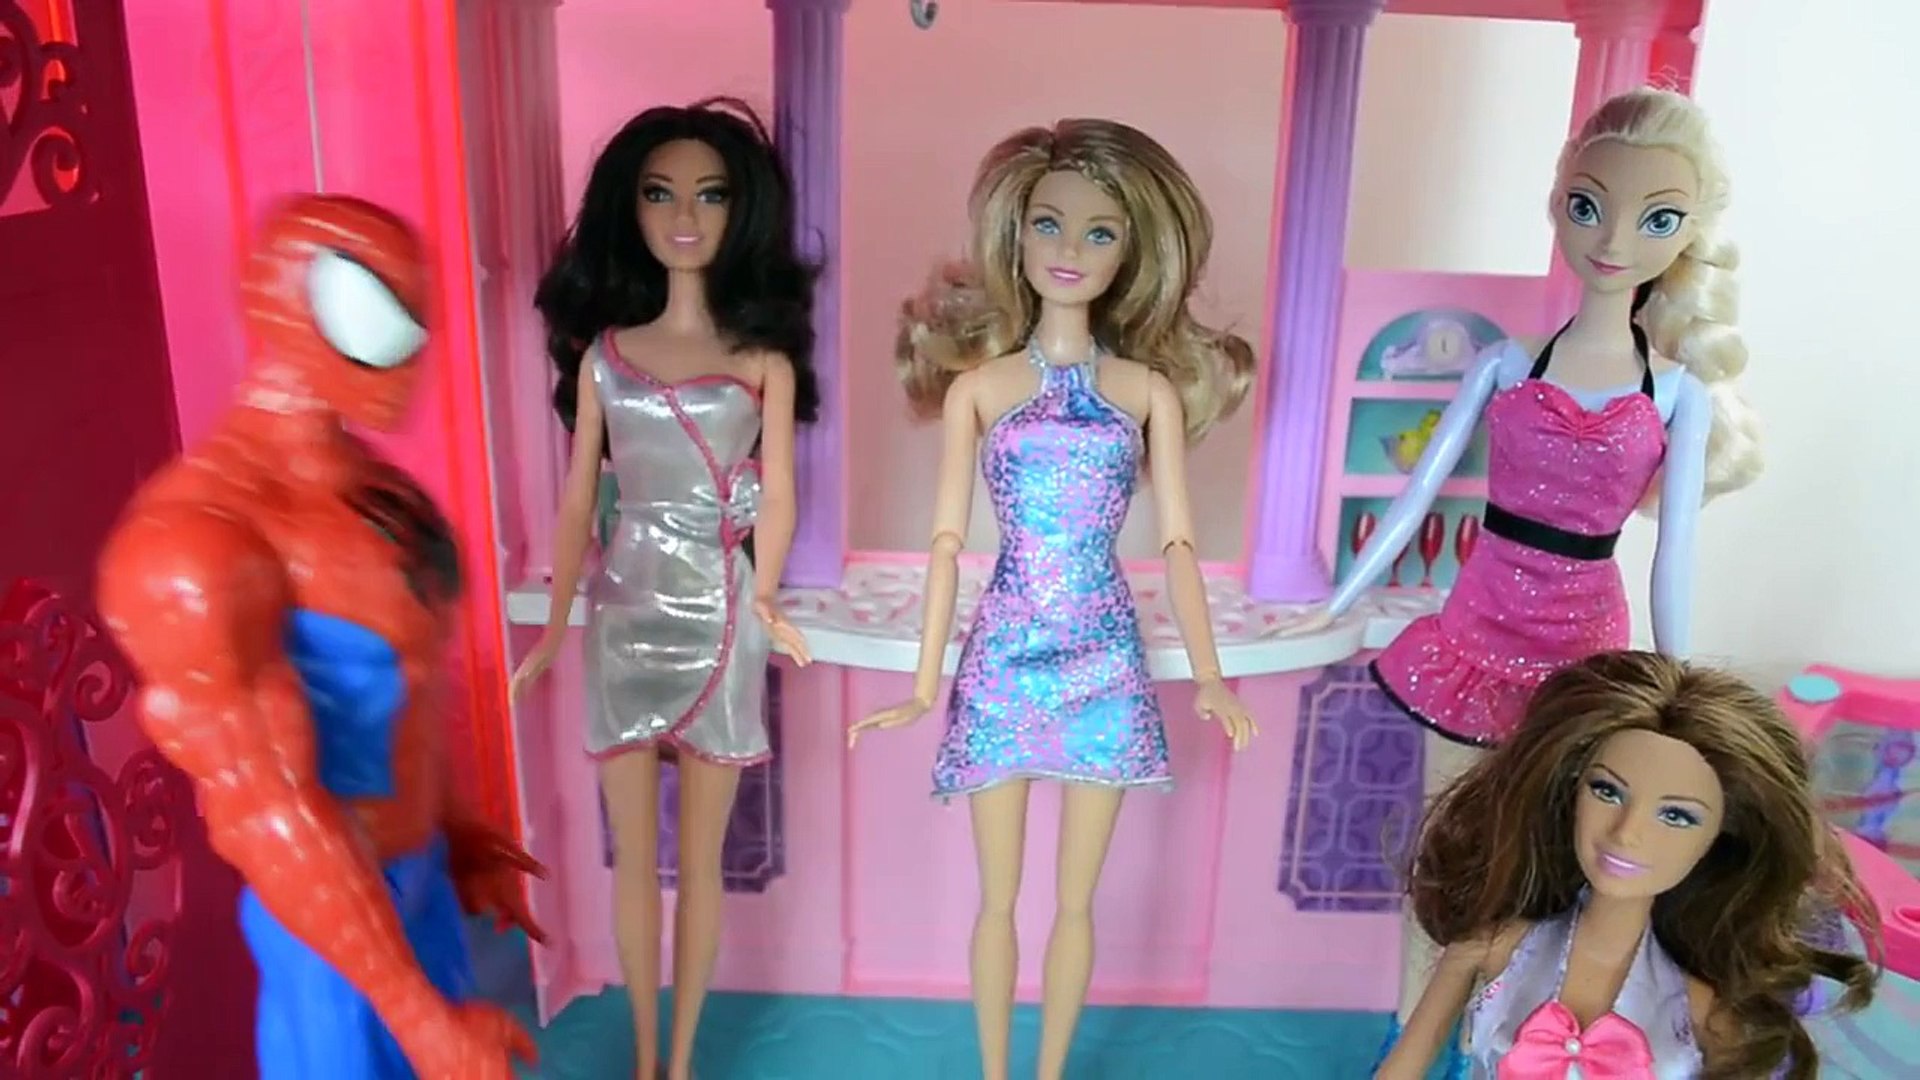 A festa no andar de cima! Novelinha da boneca Barbie em português 